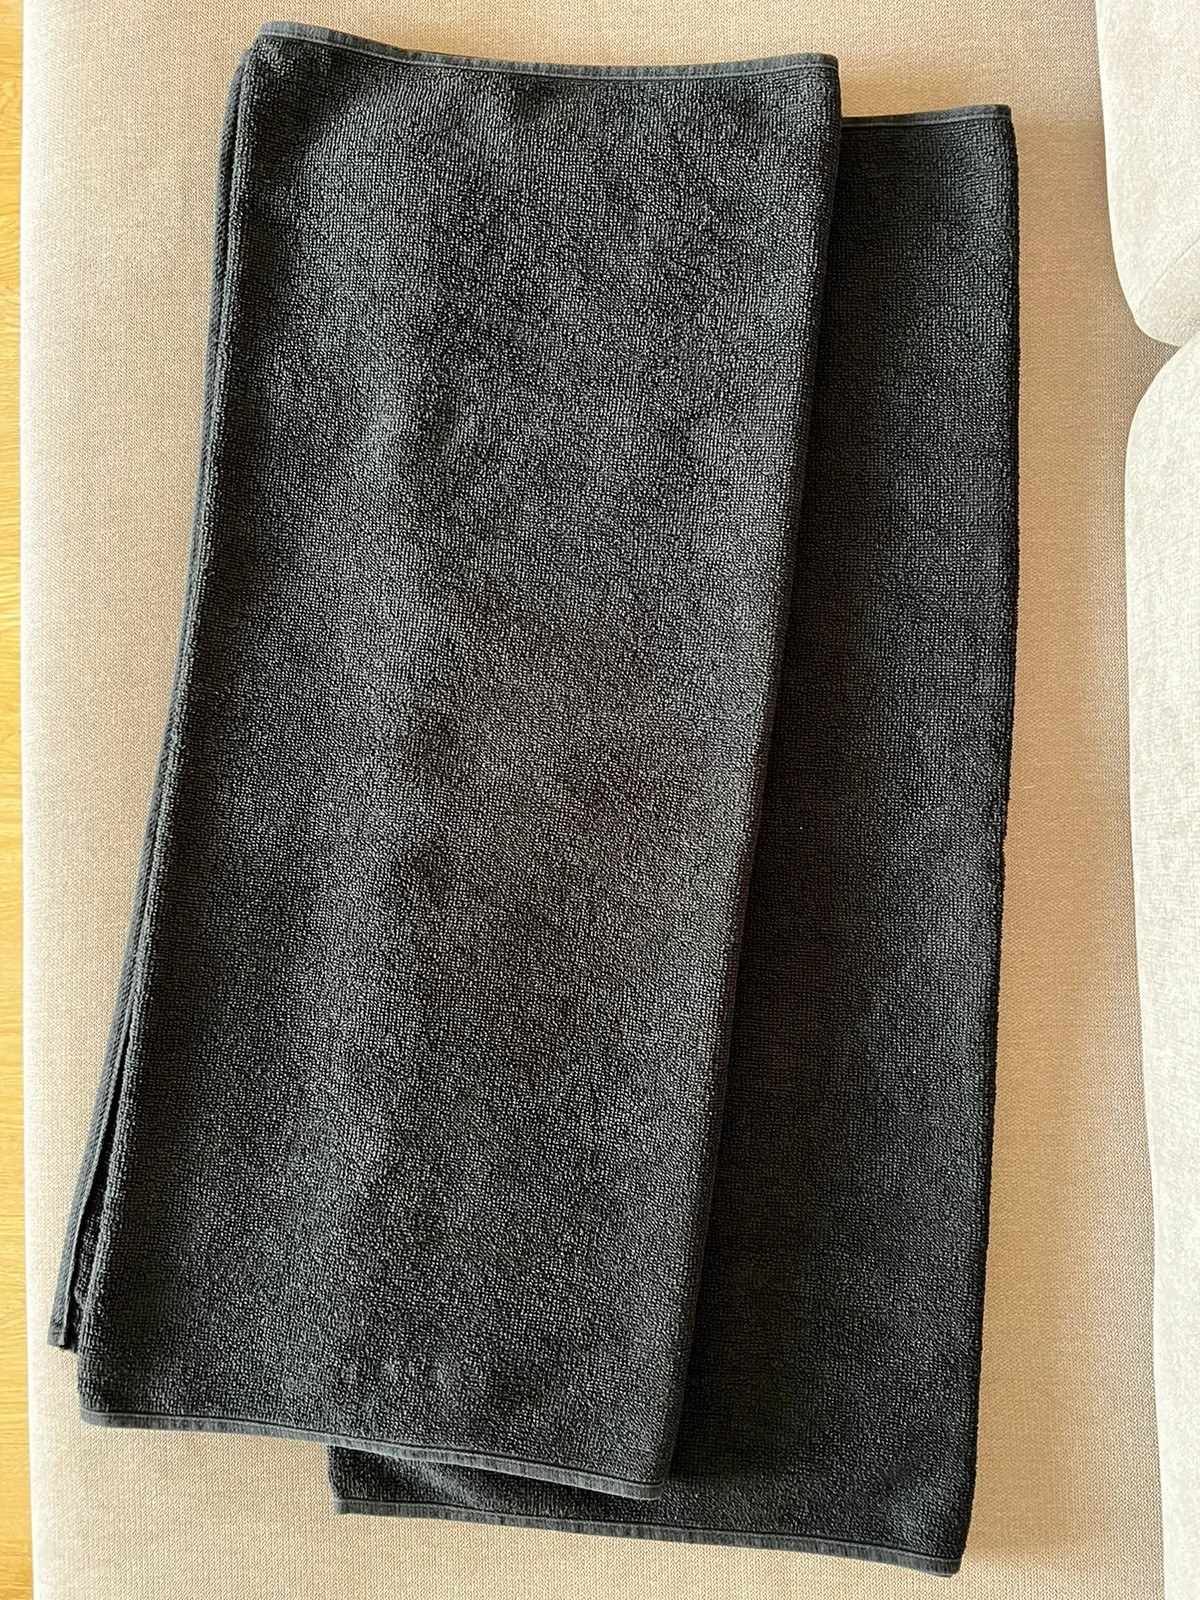 Ręczniki bawełniane czarne 70x120cm Nowe